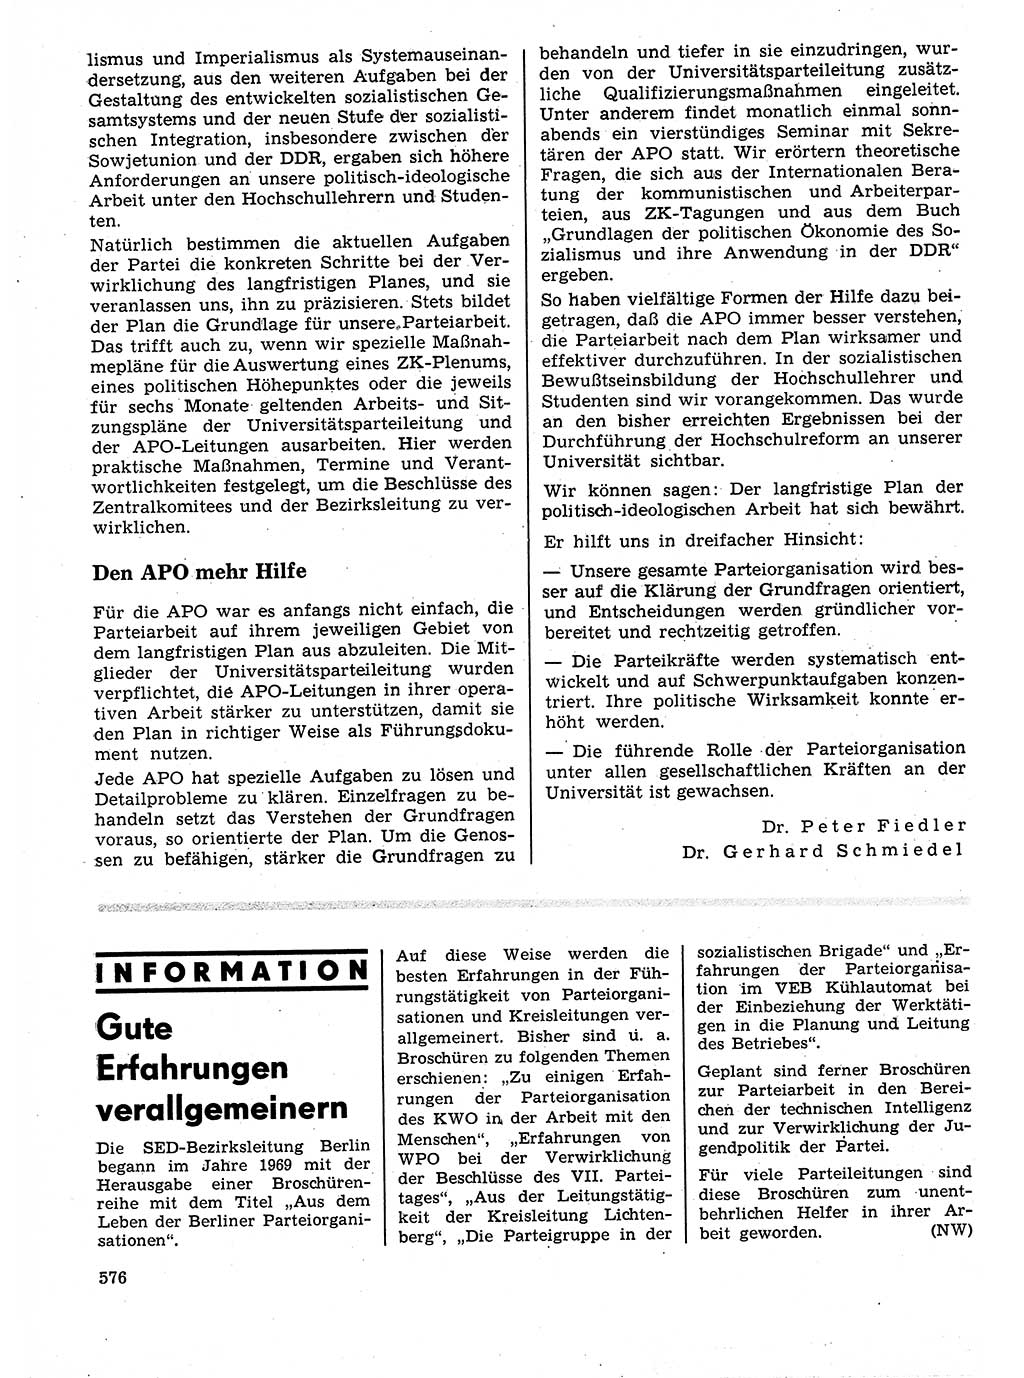 Neuer Weg (NW), Organ des Zentralkomitees (ZK) der SED (Sozialistische Einheitspartei Deutschlands) für Fragen des Parteilebens, 25. Jahrgang [Deutsche Demokratische Republik (DDR)] 1970, Seite 576 (NW ZK SED DDR 1970, S. 576)